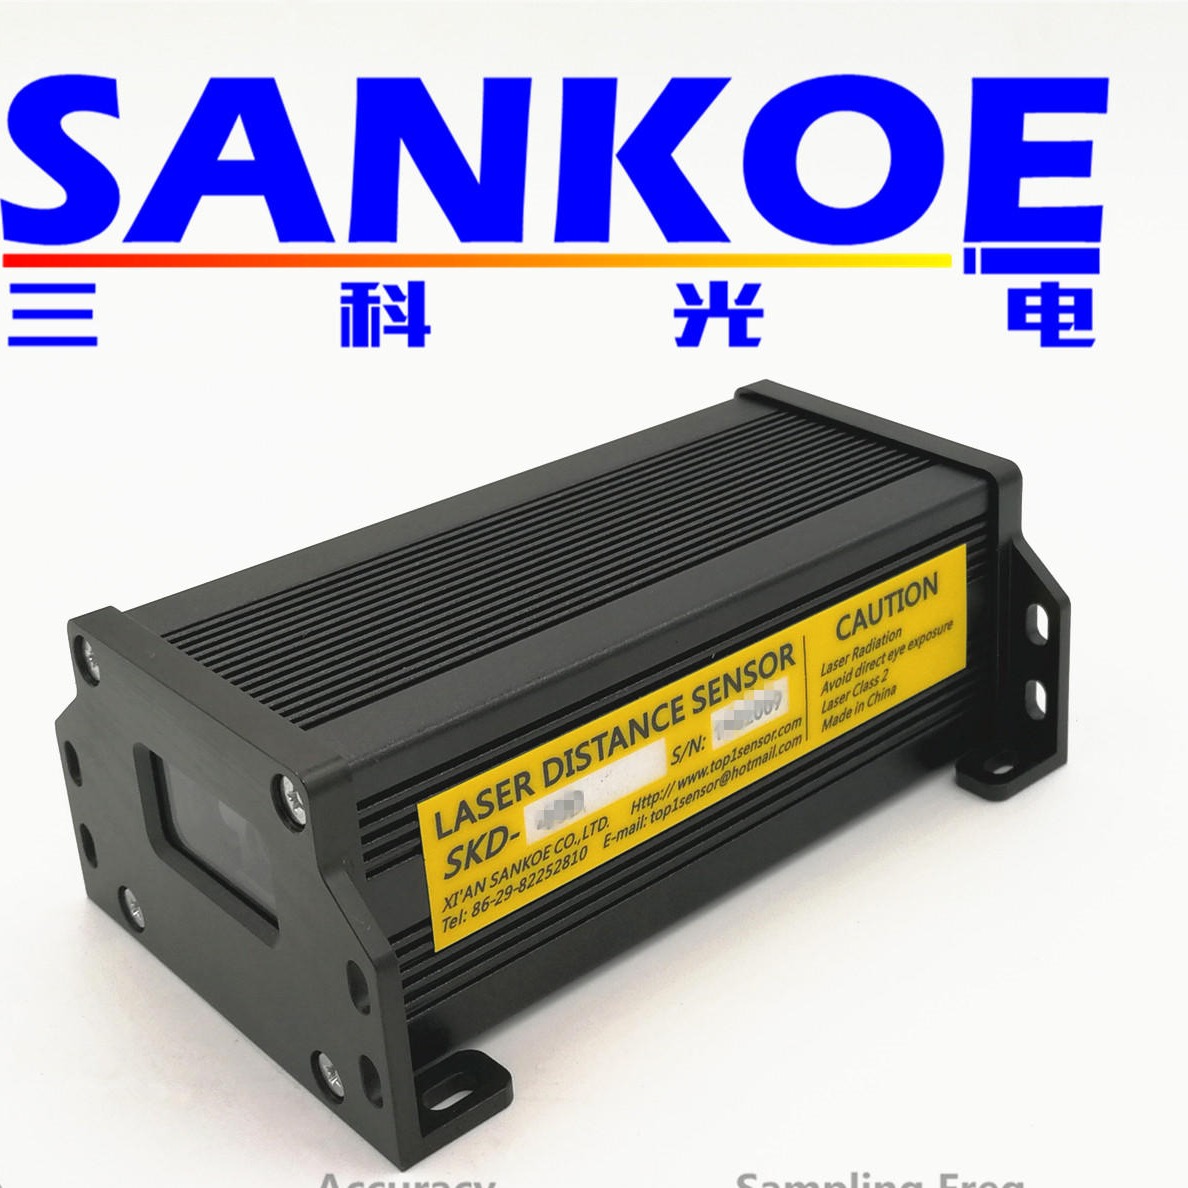 三科光电SANKOE 激光测距传感器 激光测距模块 工业激光测距 激光定位测距模块，RS232数字输出